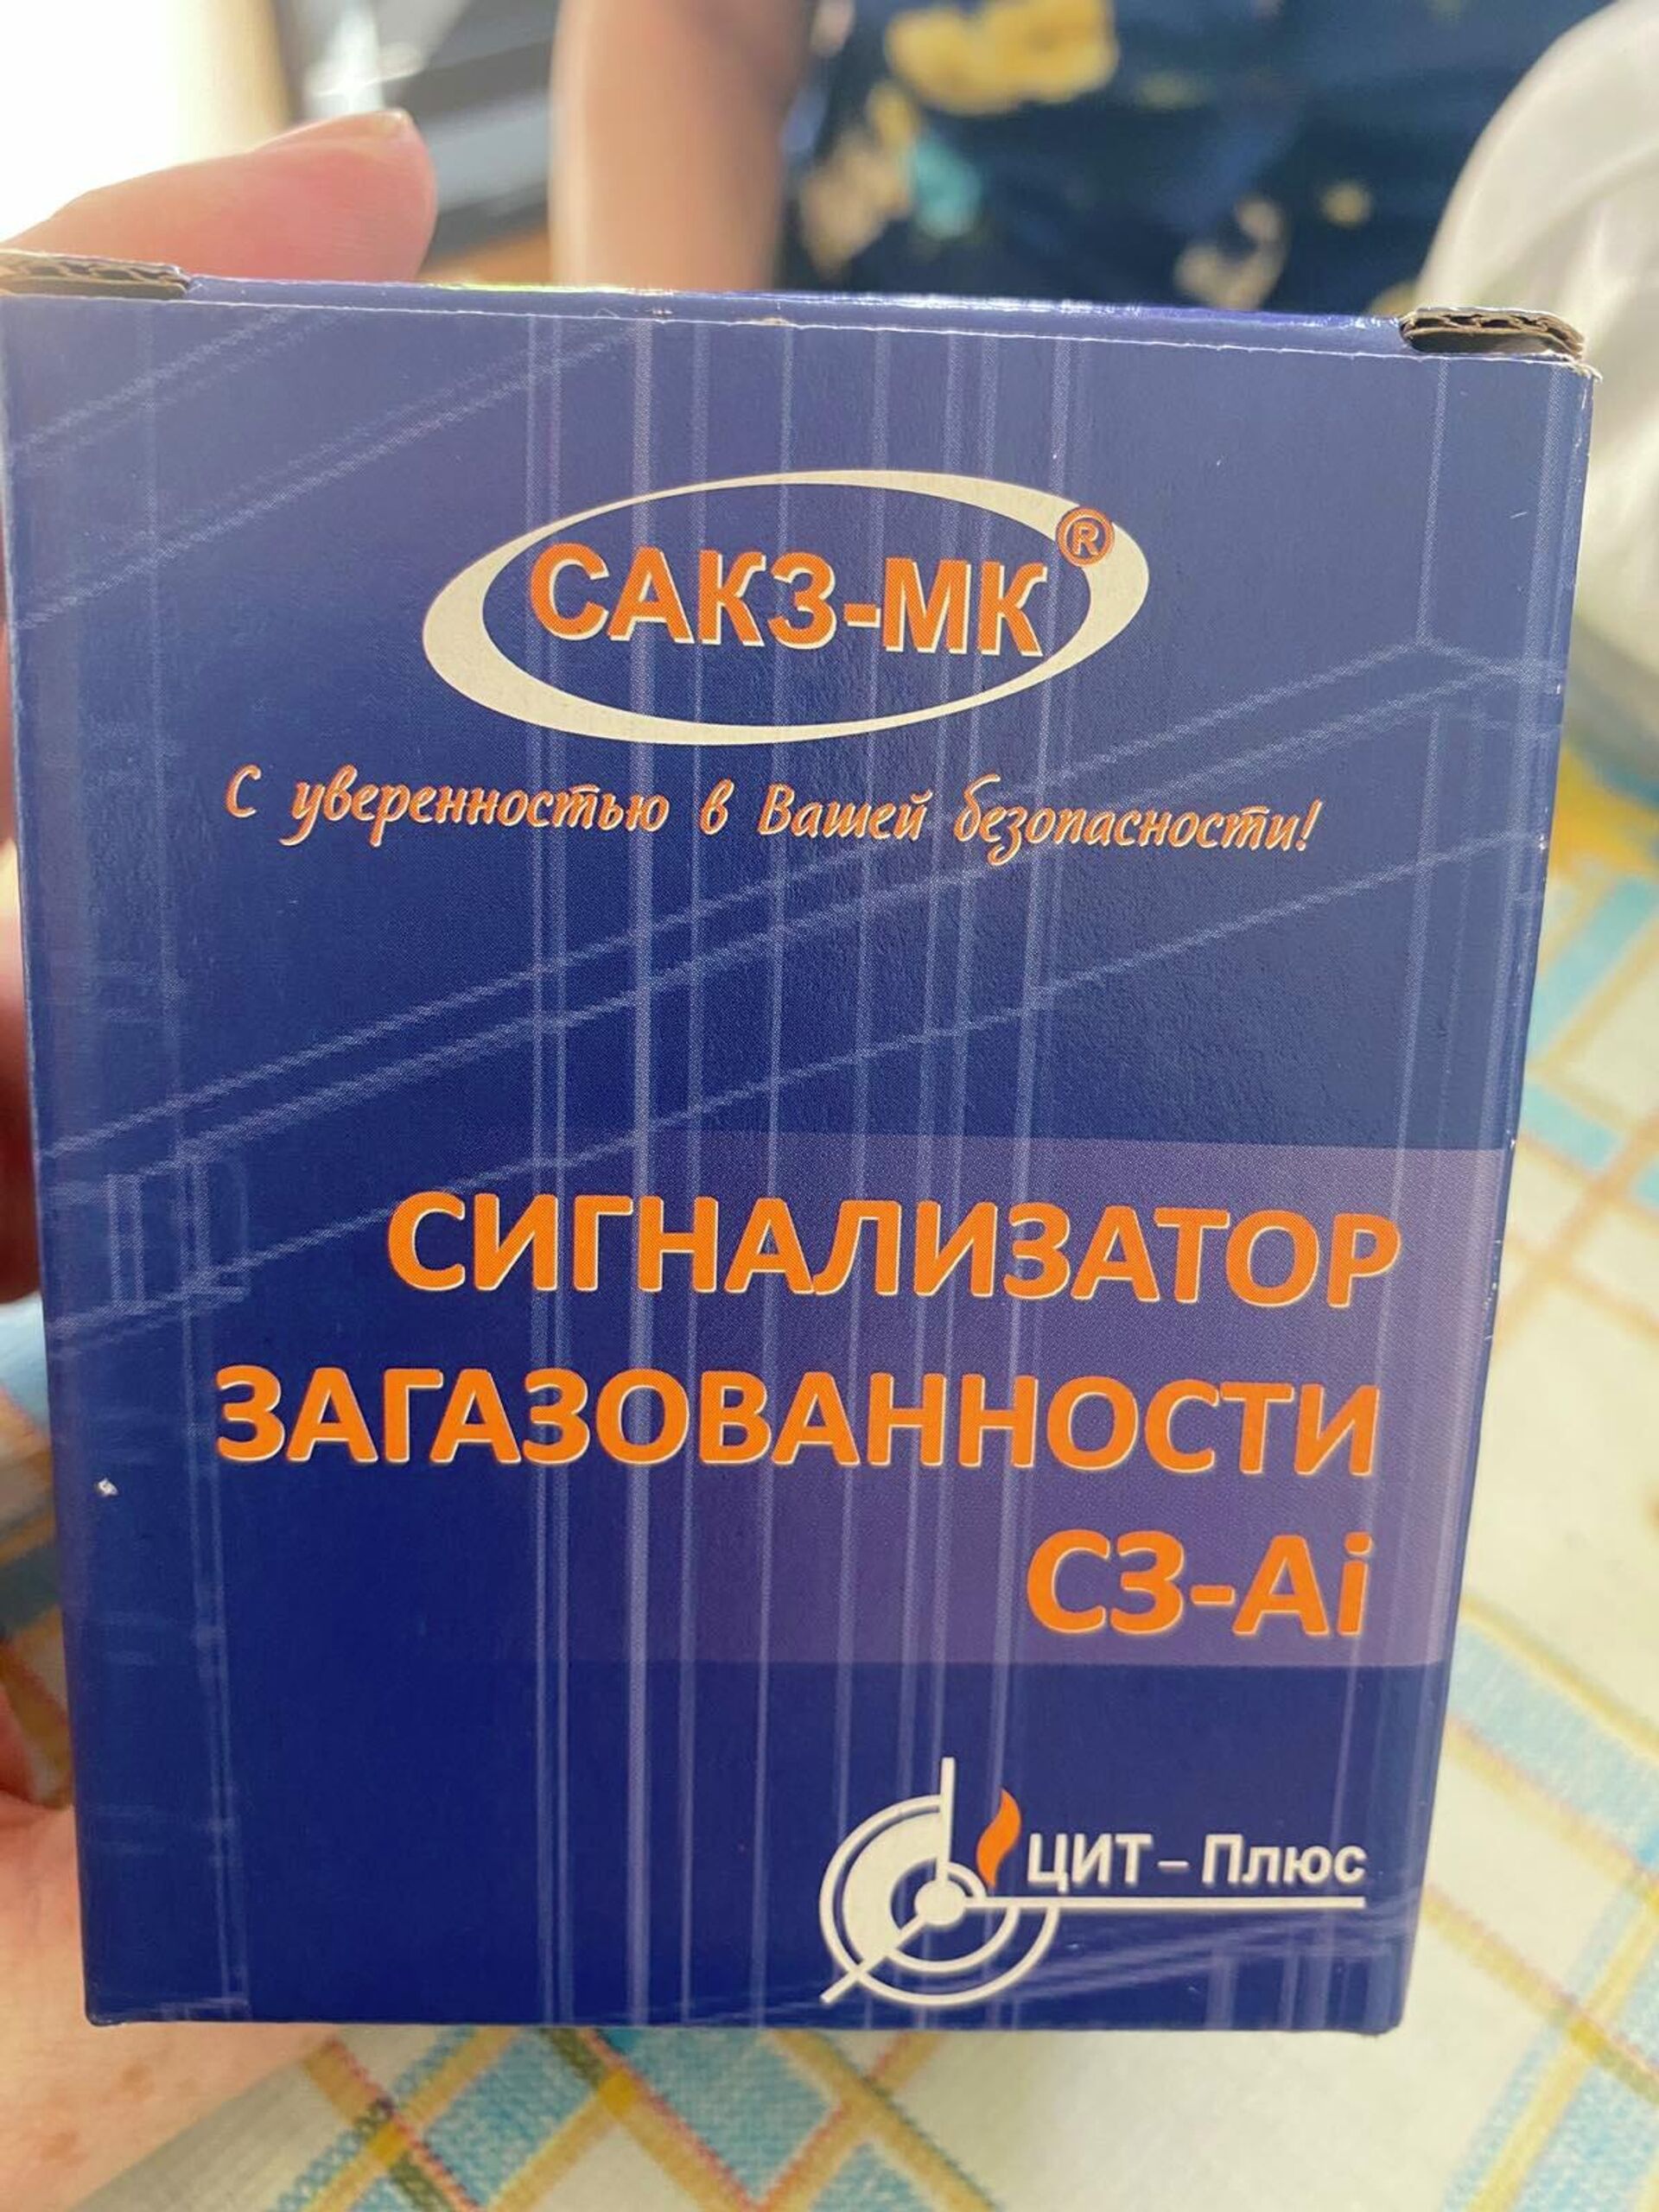 Вот такая коробочка обошлась пенсионерке в 199 рублей - Sputnik Беларусь, 1920, 26.07.2021